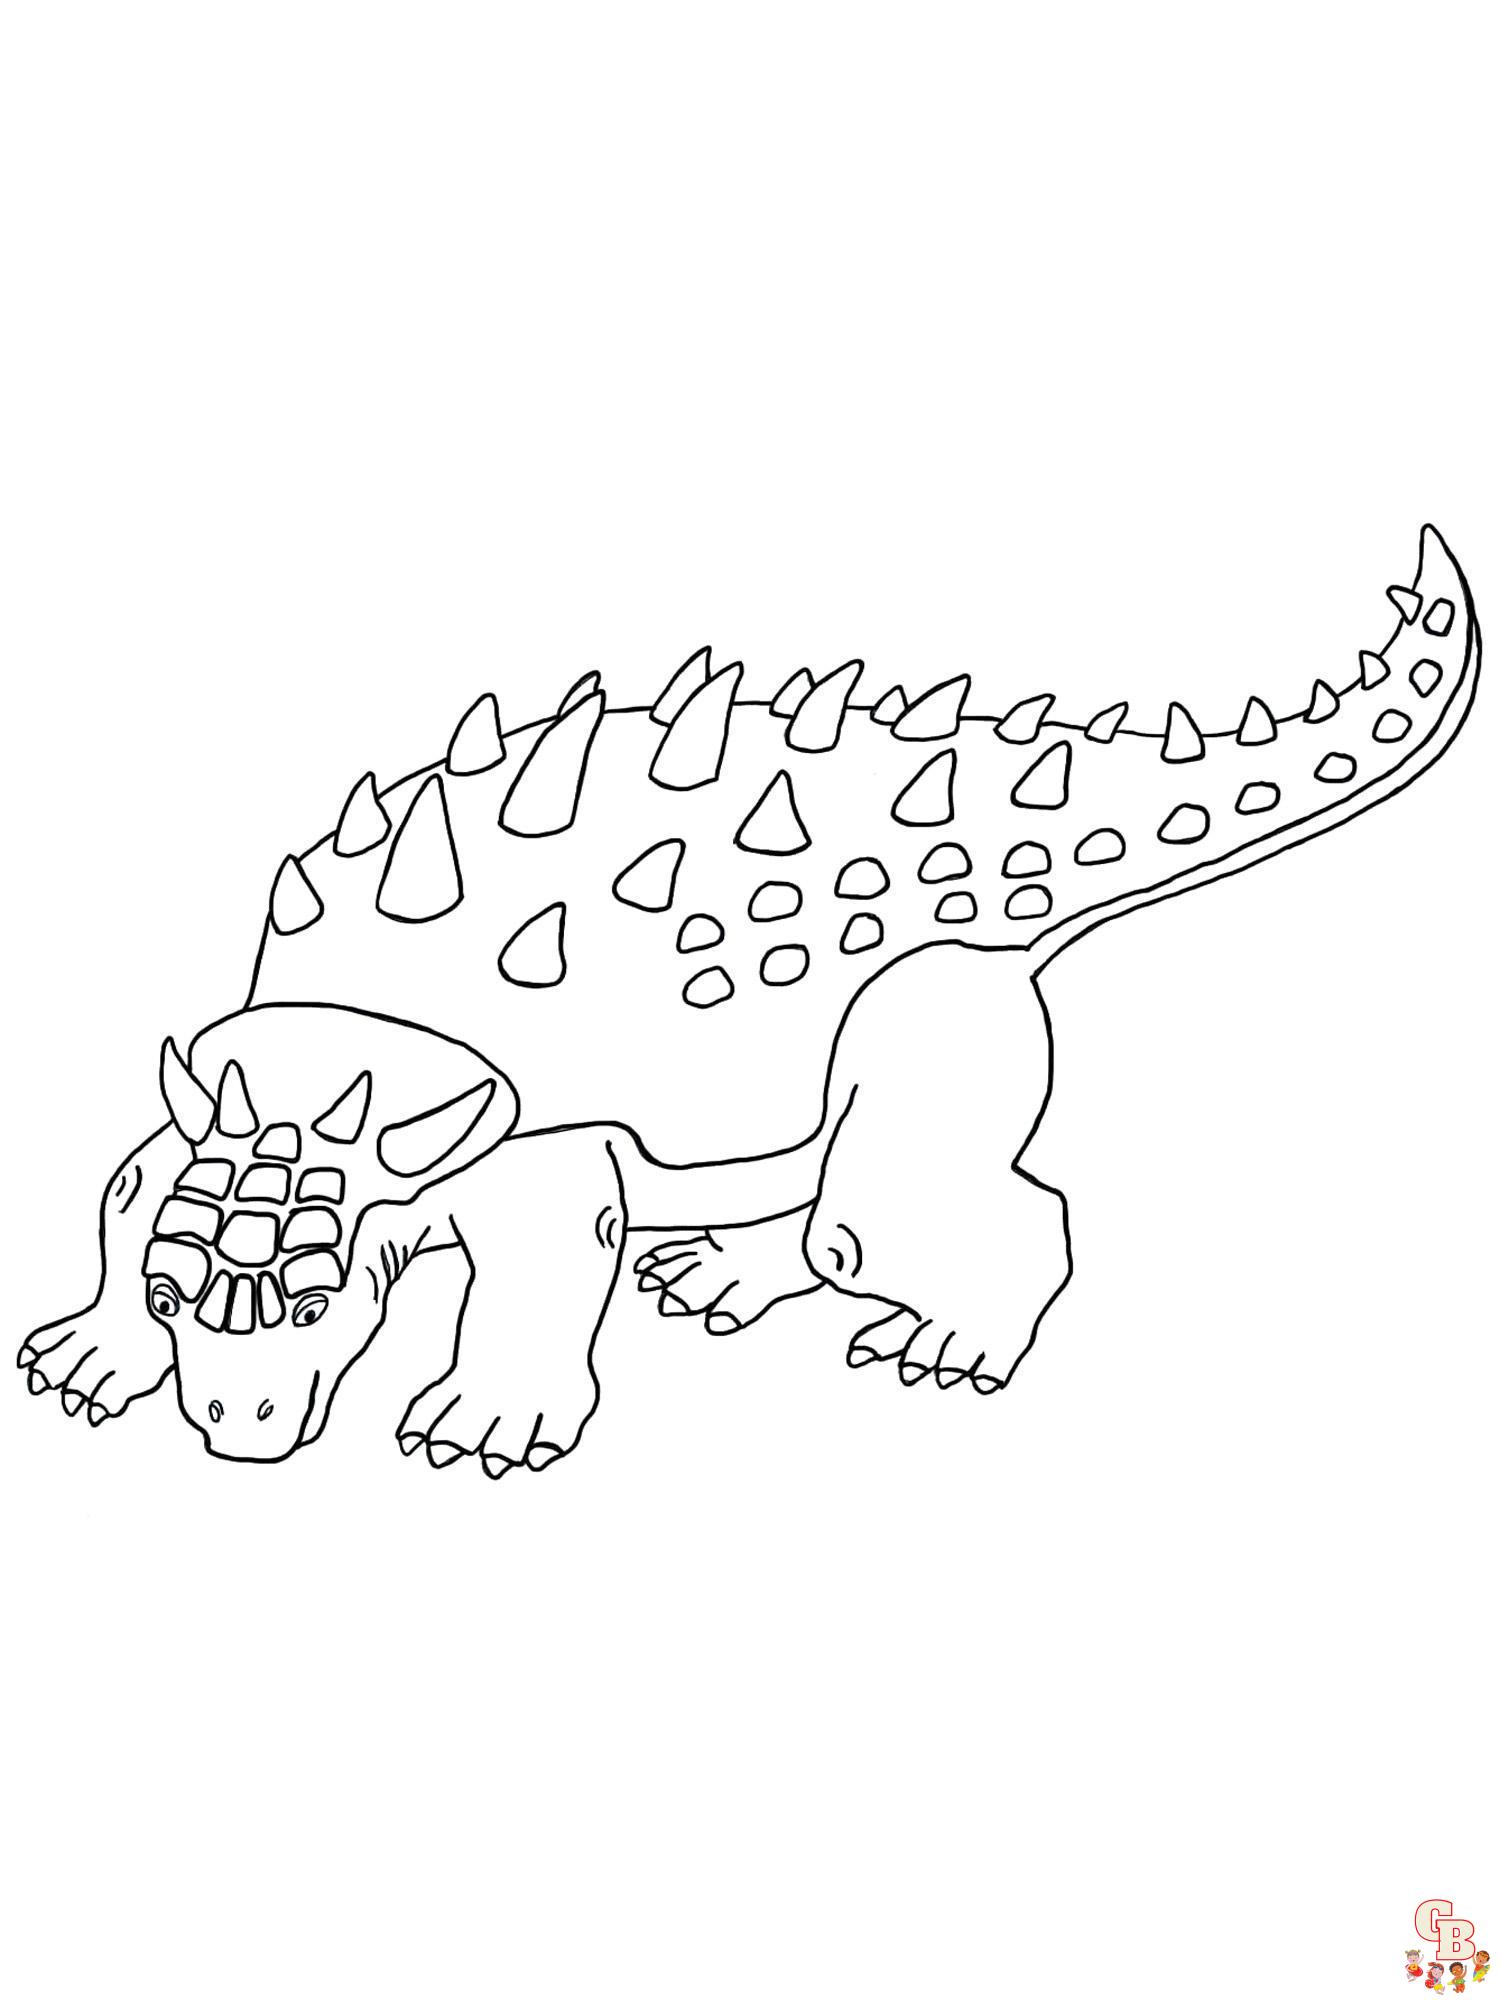 Malvorlagen Ankylosaurus 1